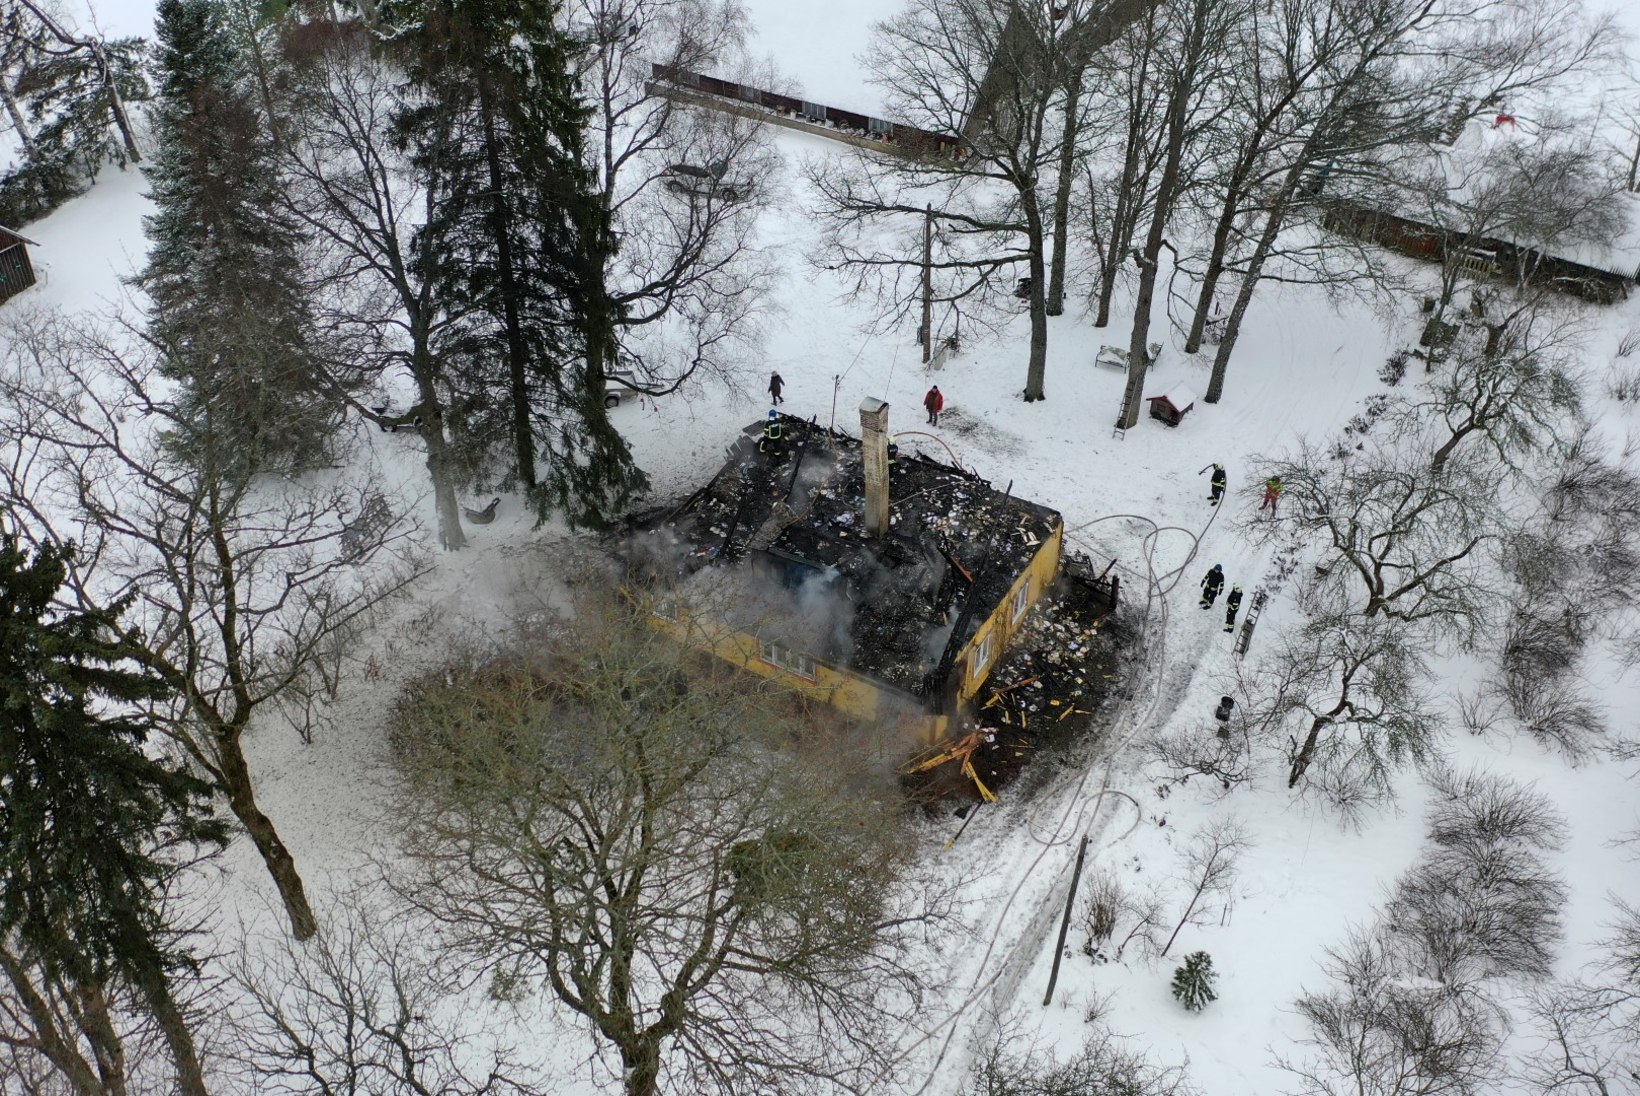 FOTOD | Tulekahjus hävis täielikult Viljandimaal asuv talumaja